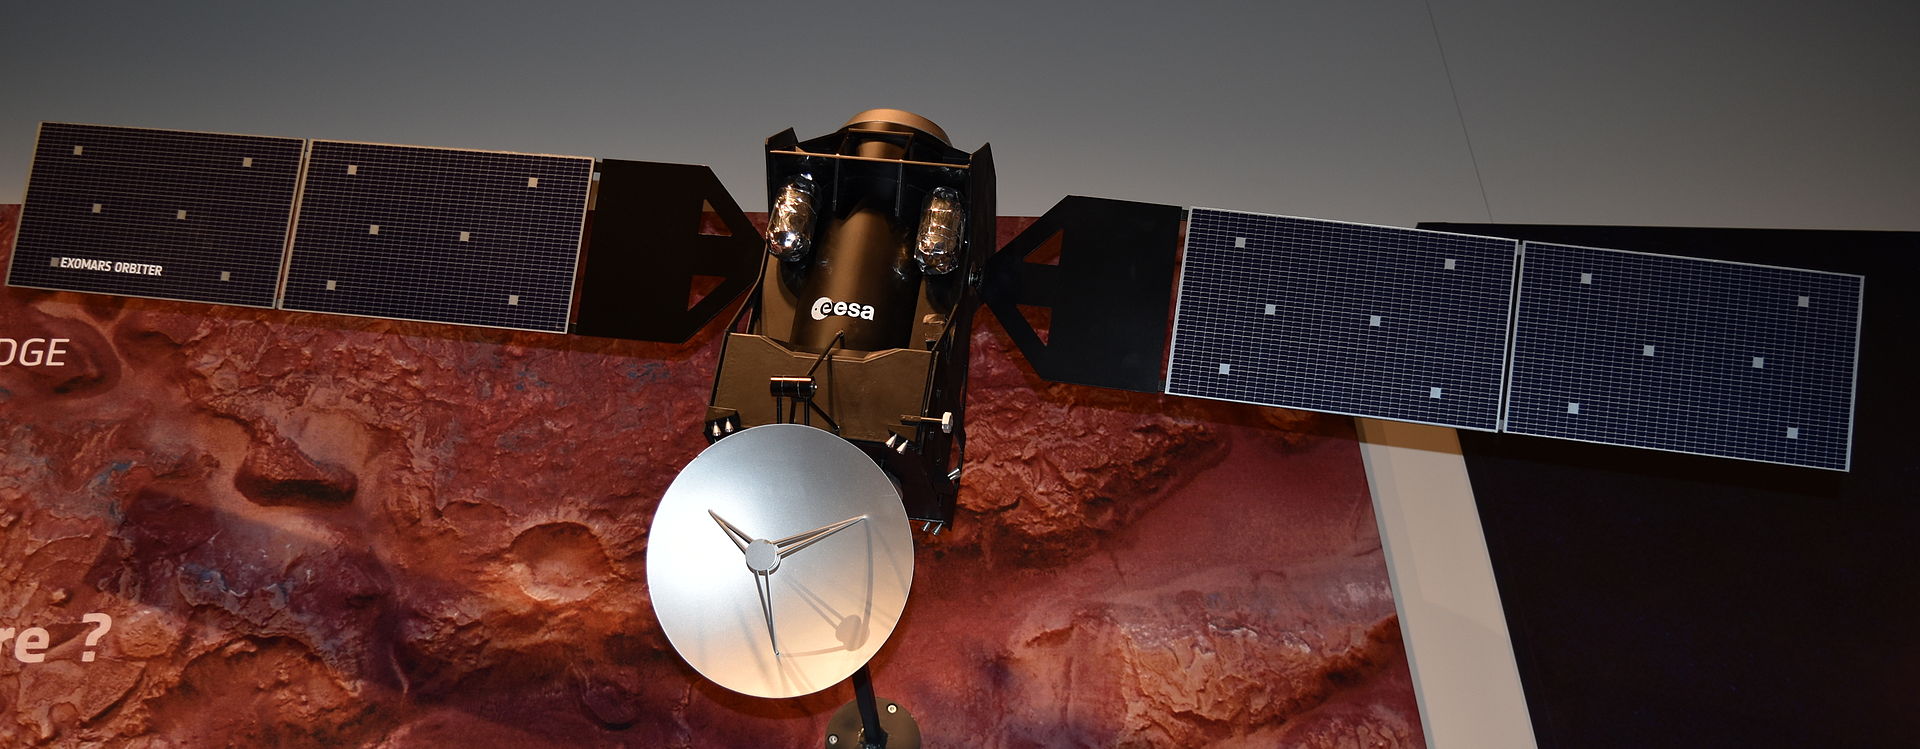 ЕКА: марсианский зонд Schiaparelli разбился из-за неправильного определения высоты при спуске - 2